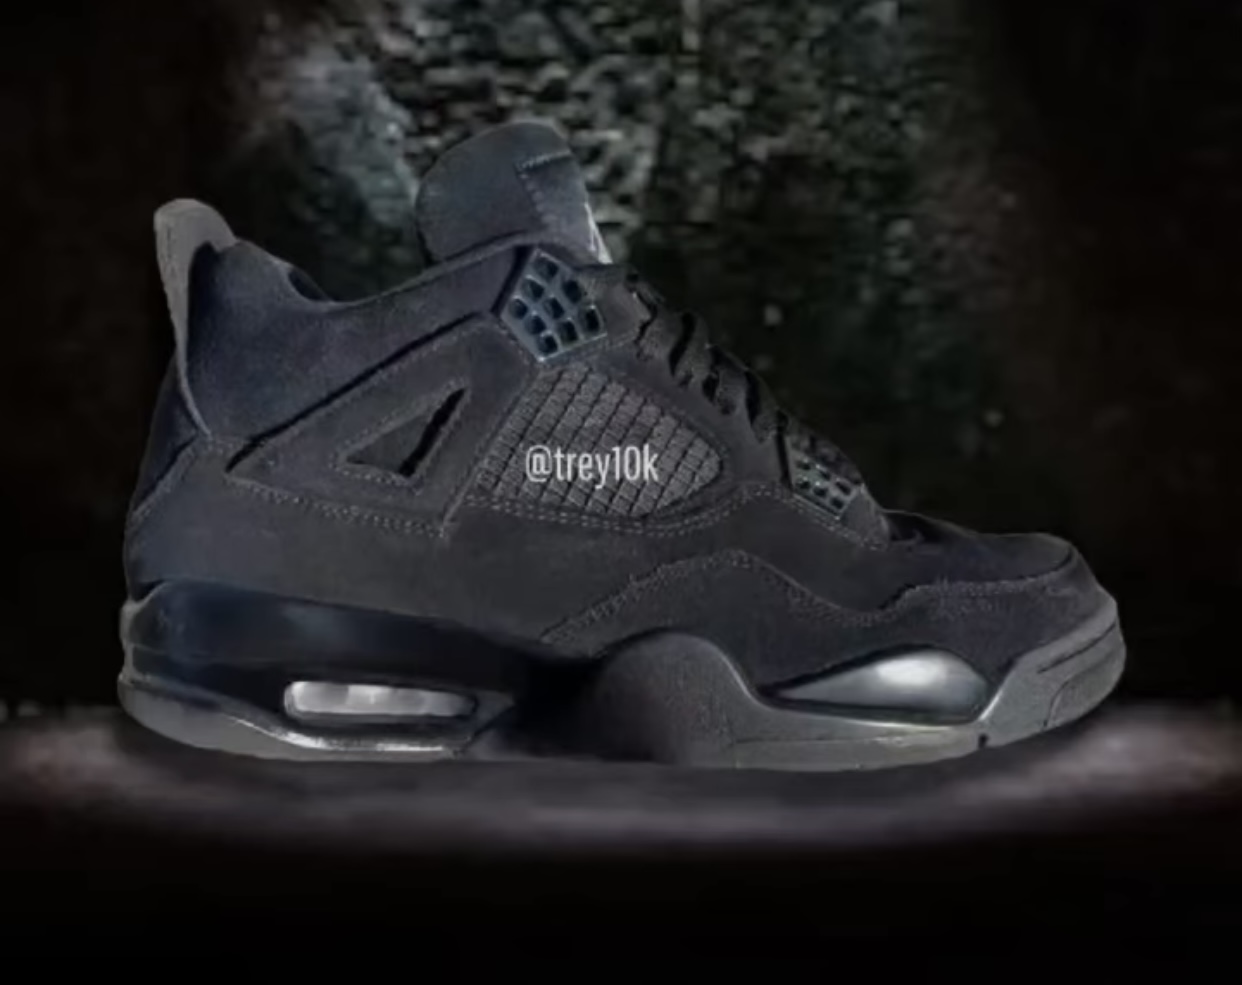 Nike SB Air Jordan 4 Black Cat Release Date